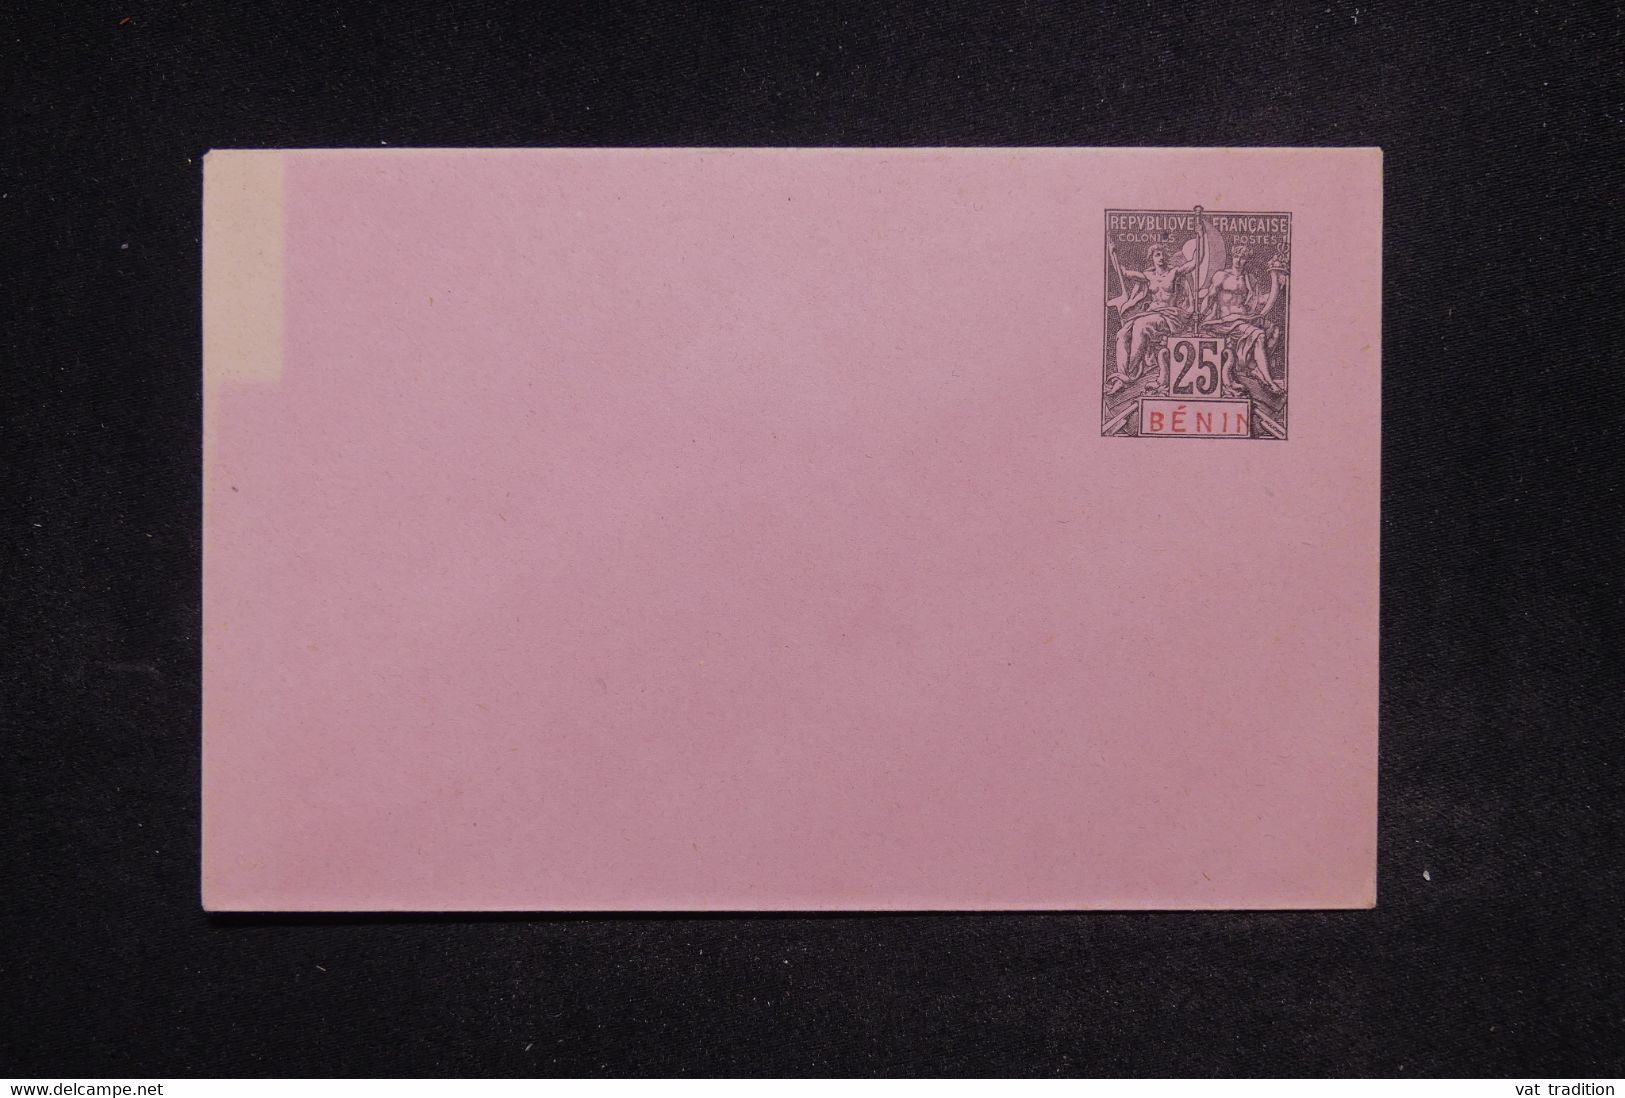 BÉNIN - Entier postal type Groupe, non circulé - L 122072